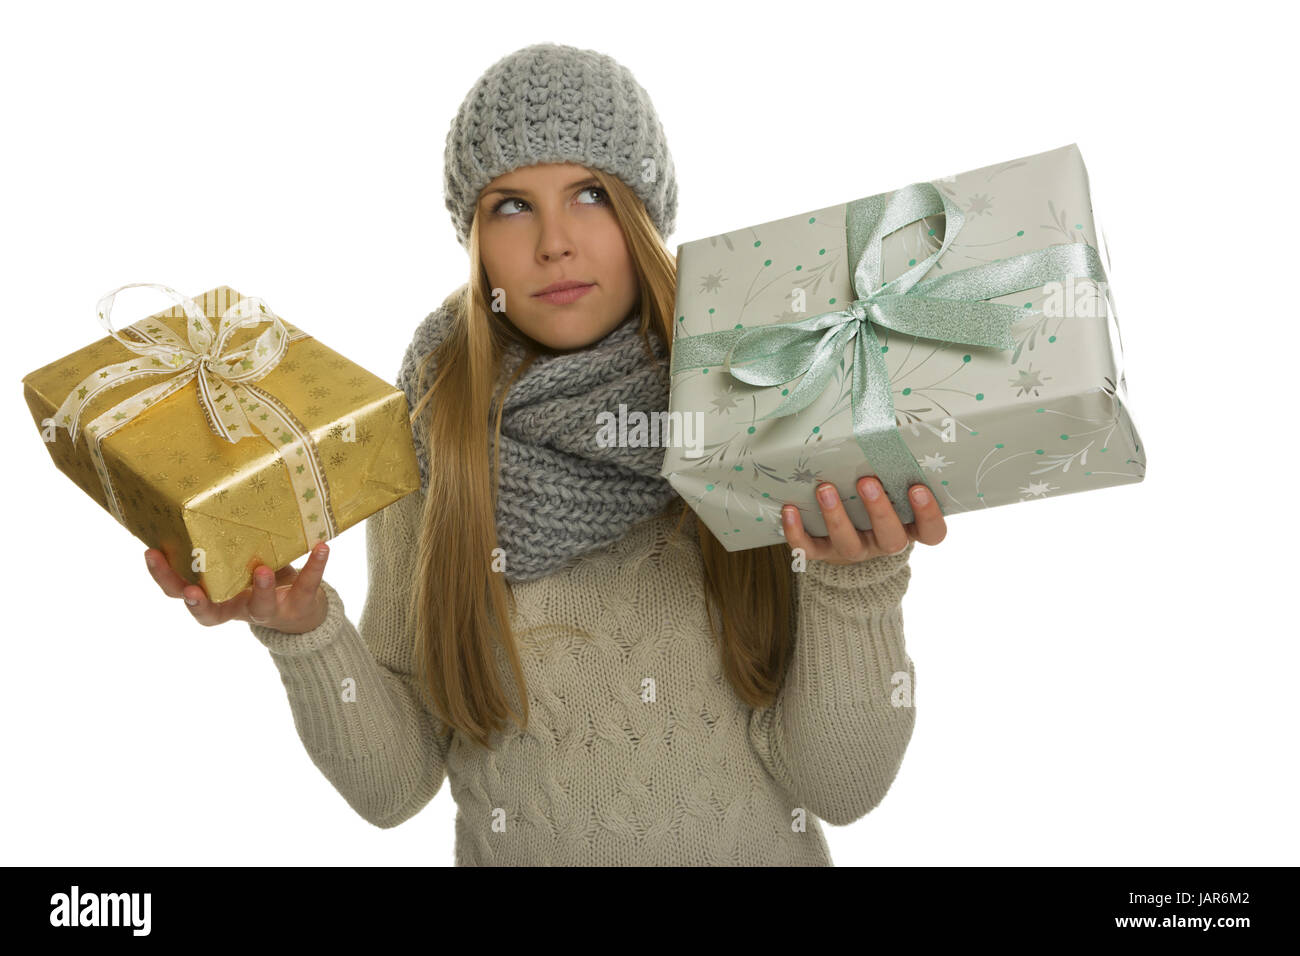 Frau mit langen Haaren und warmer Winterkleidung muss sich zwischen einem kleinen golden verpackten Geschenk und einem größeren grau und türkis verpacktem Geschenk entscheiden. Stock Photo